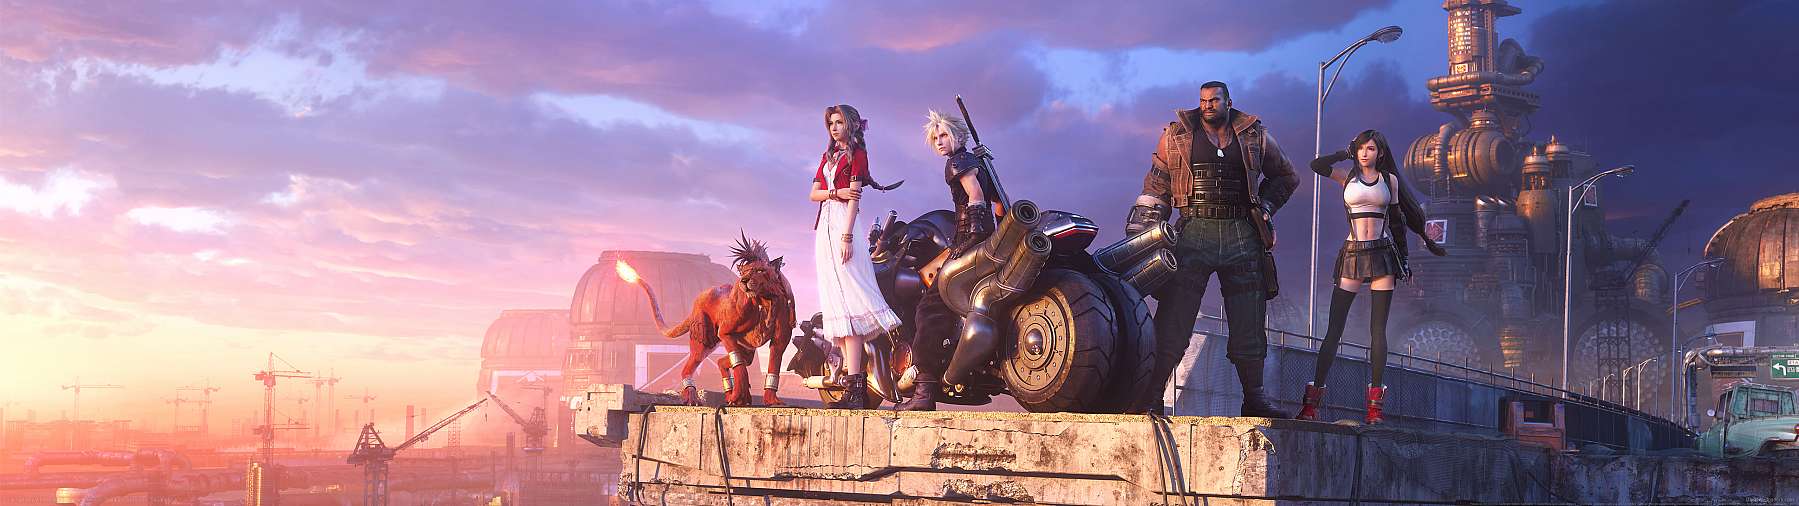 Final Fantasy VII Remake Intergrade superwide achtergrond 01